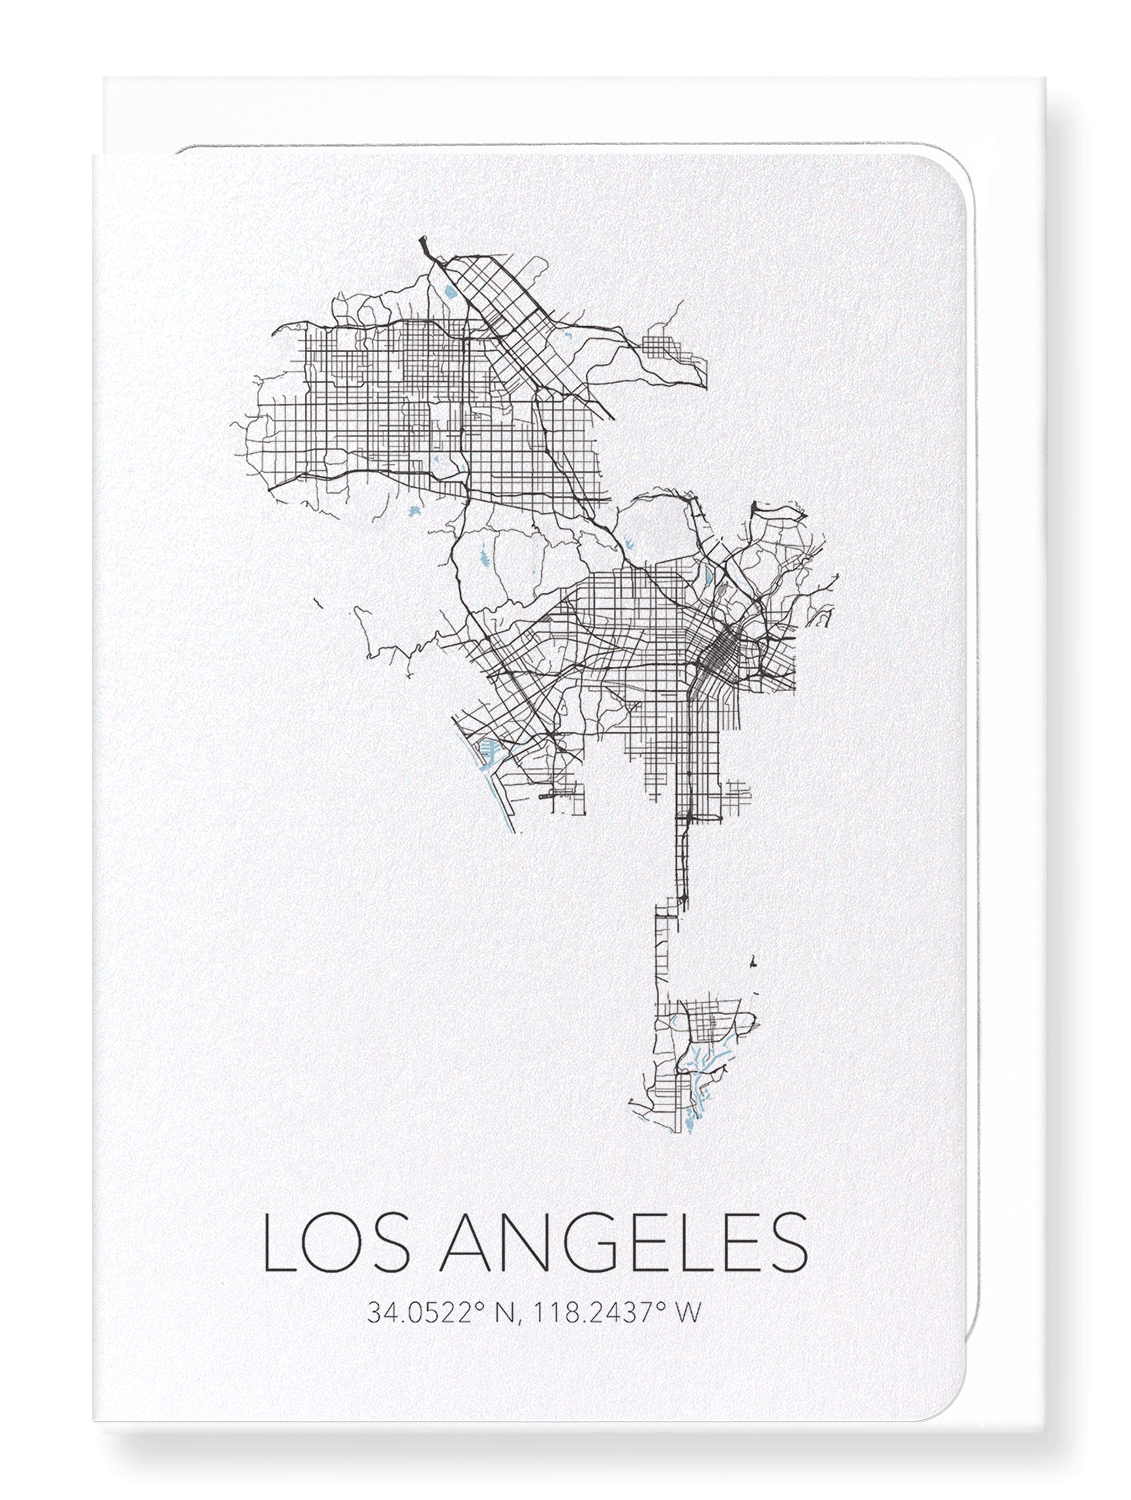 LOS ANGELES CUTOUT: Map Cutout Greeting Card